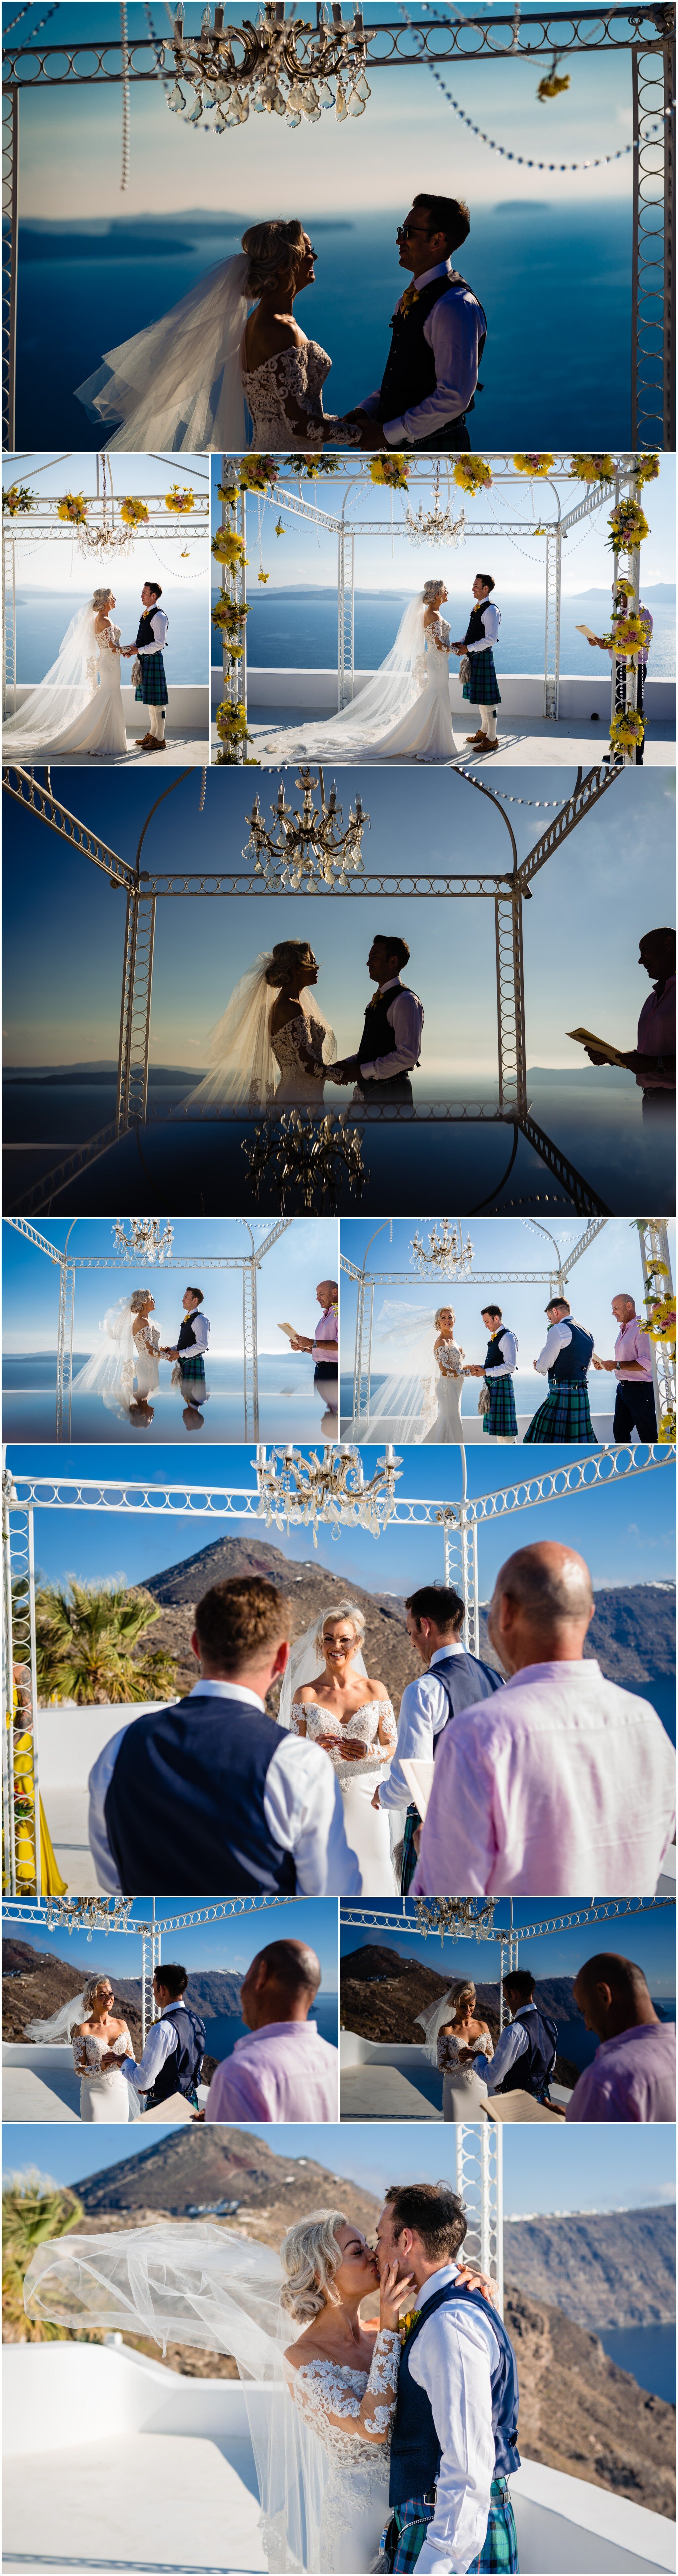 santorini-wedding-photographer-ricky-baillie-photography-wedding-planner-santorini-greece_0007.jpg